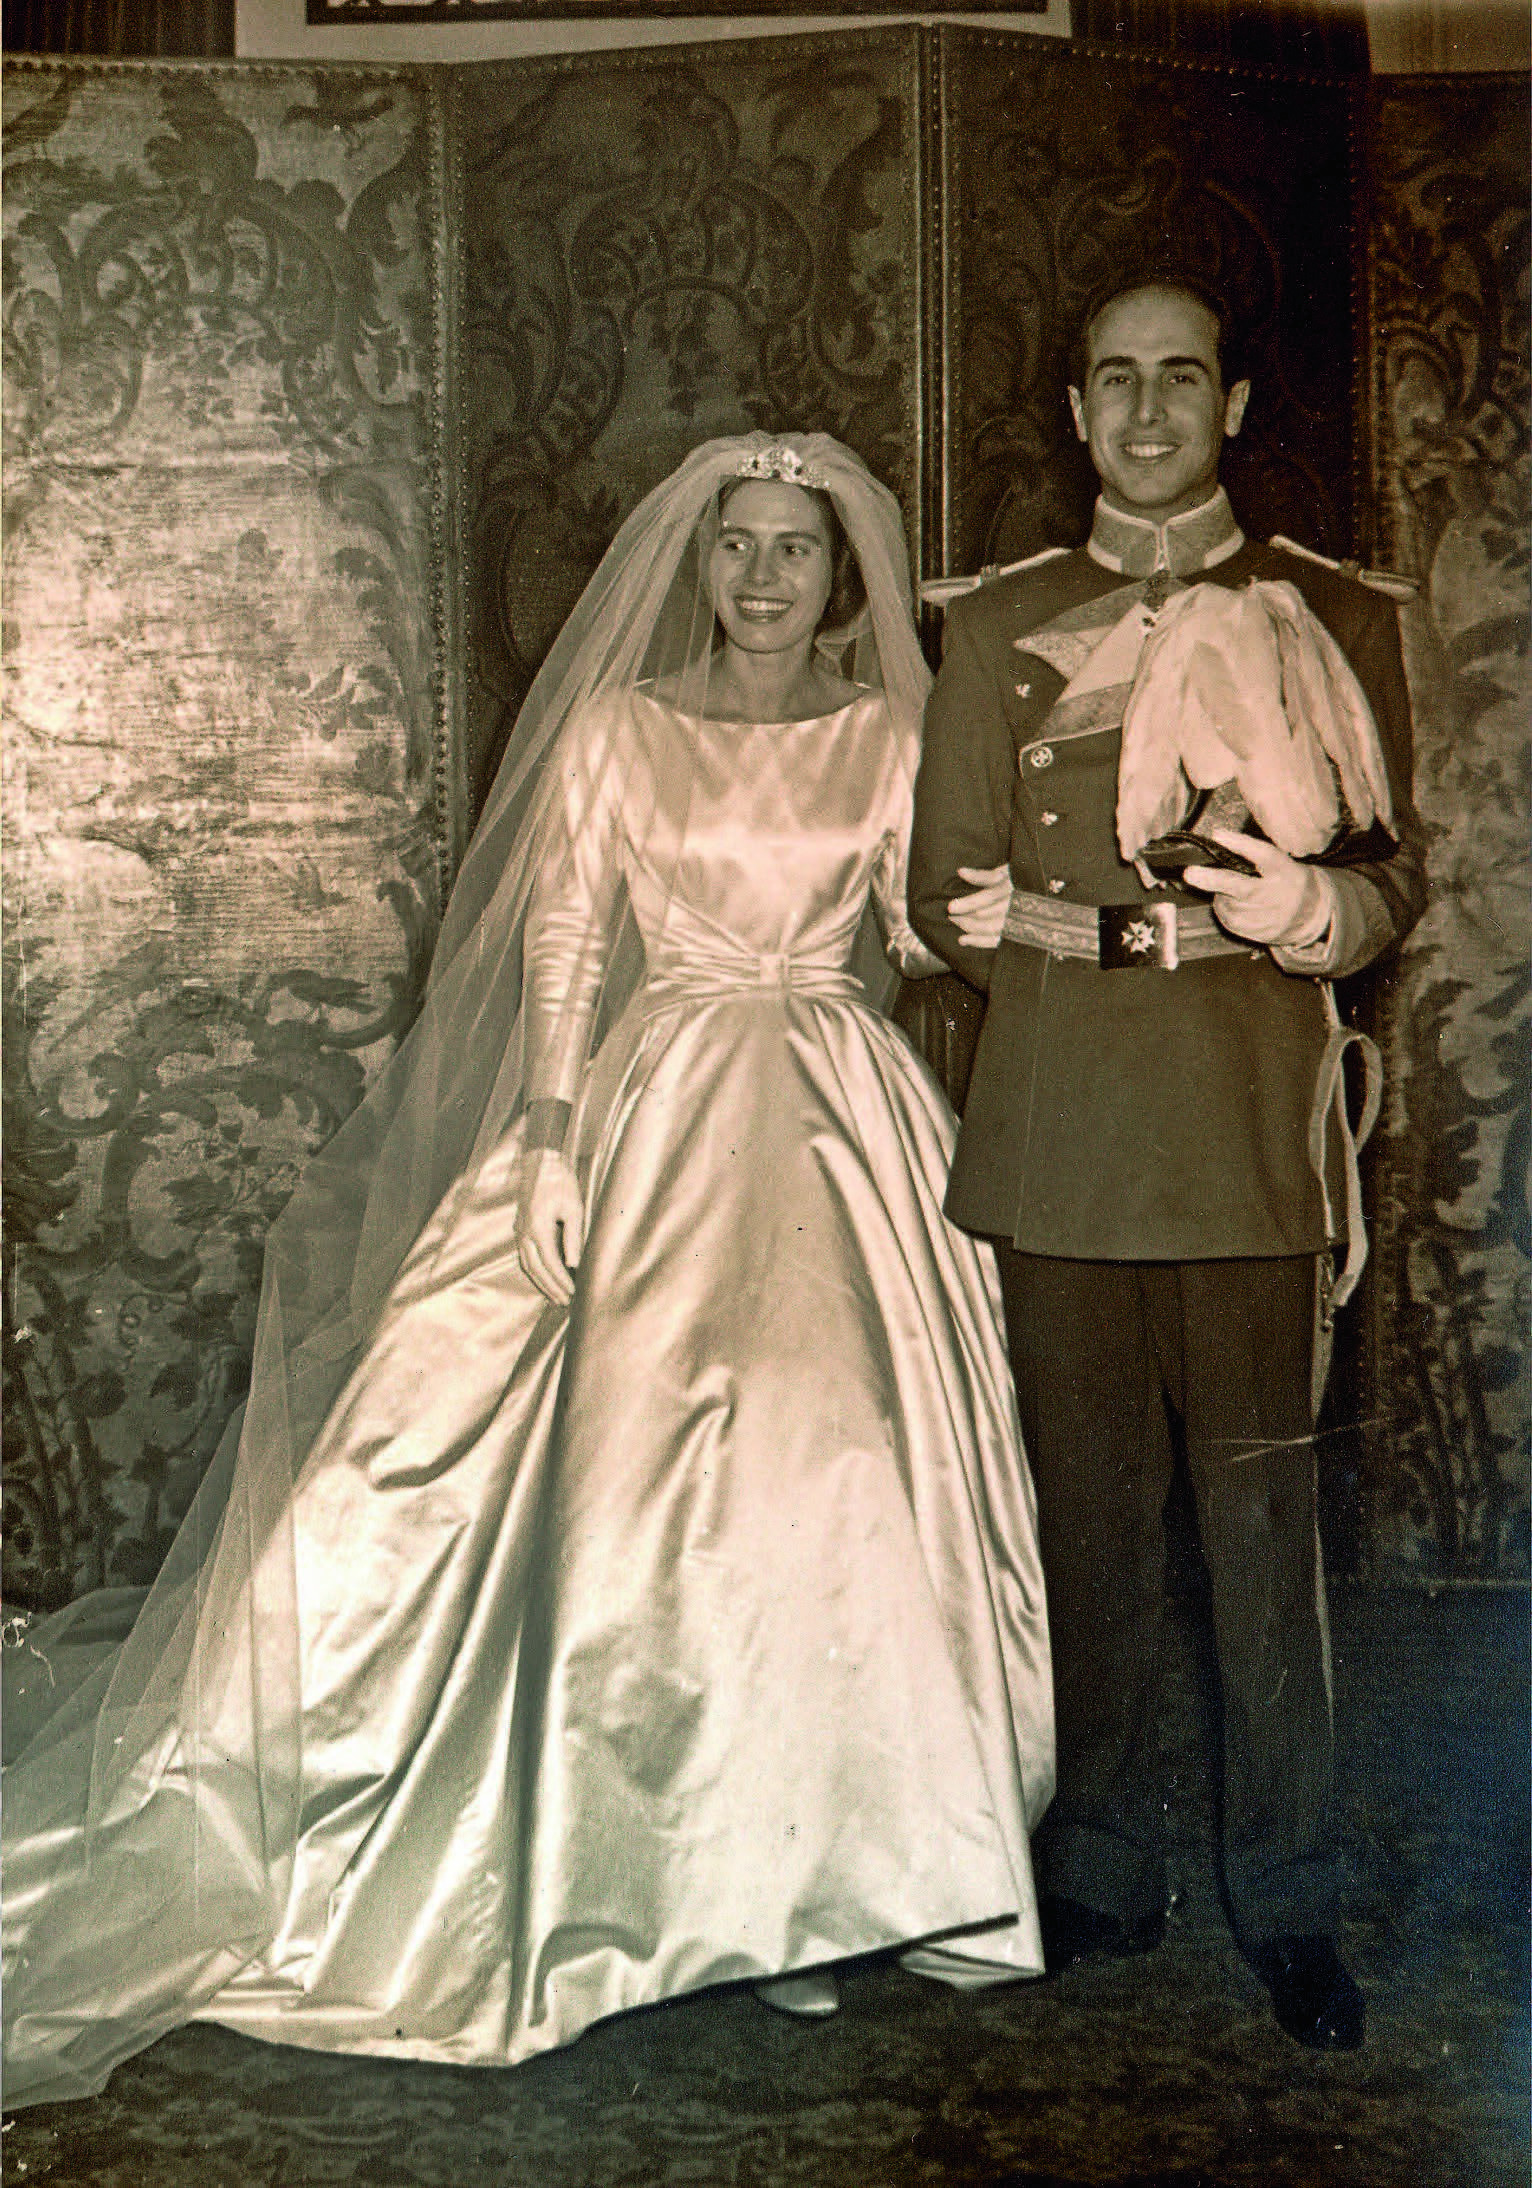 La boda de los padres de Ágatha, en 1958.